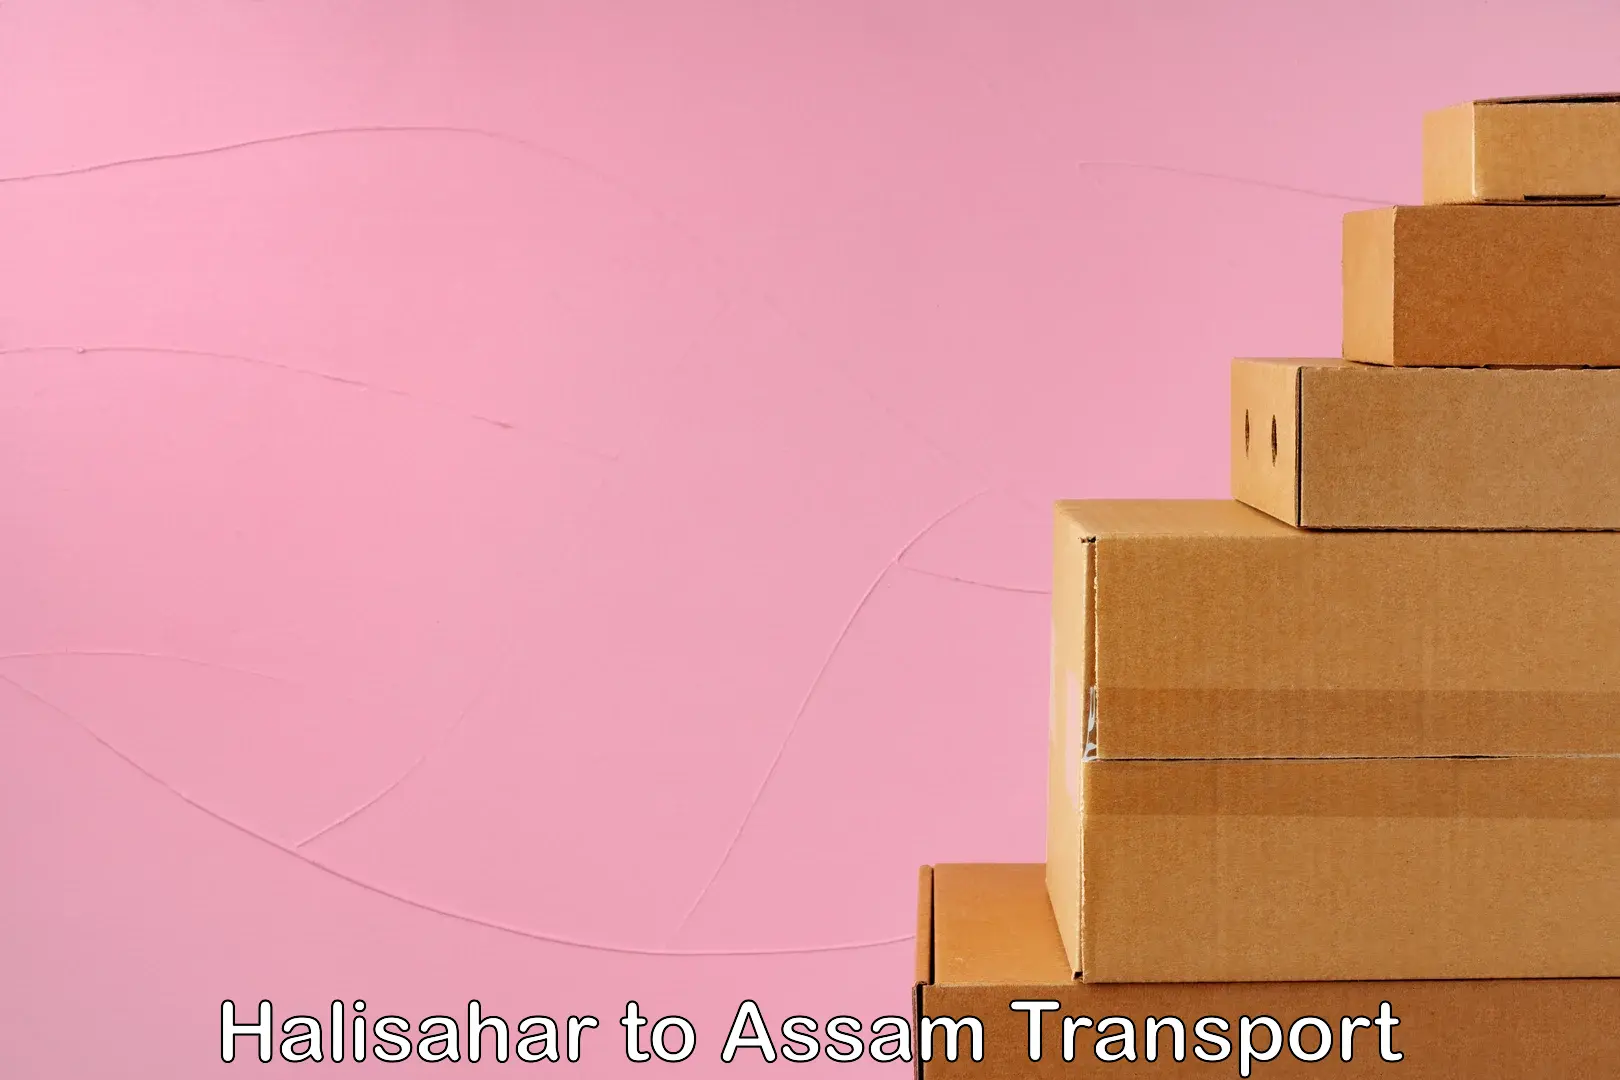 Intercity transport in Halisahar to Assam